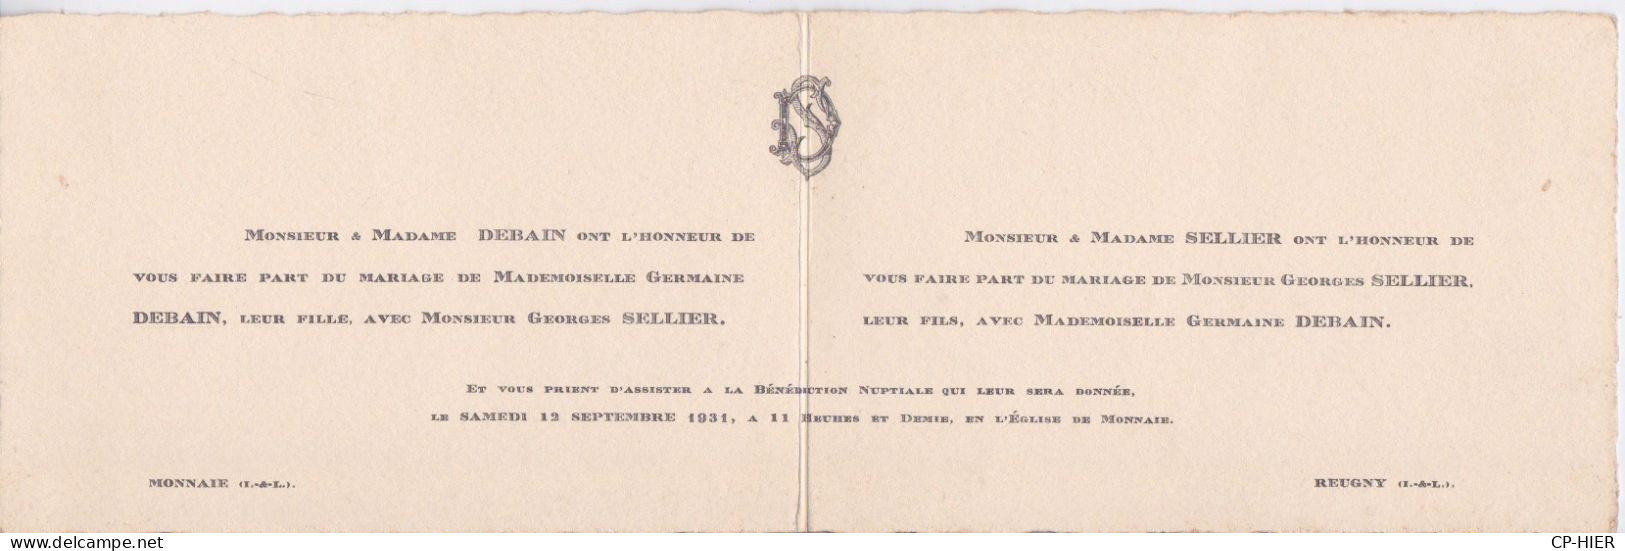 FAIRE-PART DE MARIAGE - BENEDICTION NUPTIALE DU 12 SEPTEMBRE 1931 EGLISE DE MONNAIE 37 - INDRE ET LOIRE - Mariage